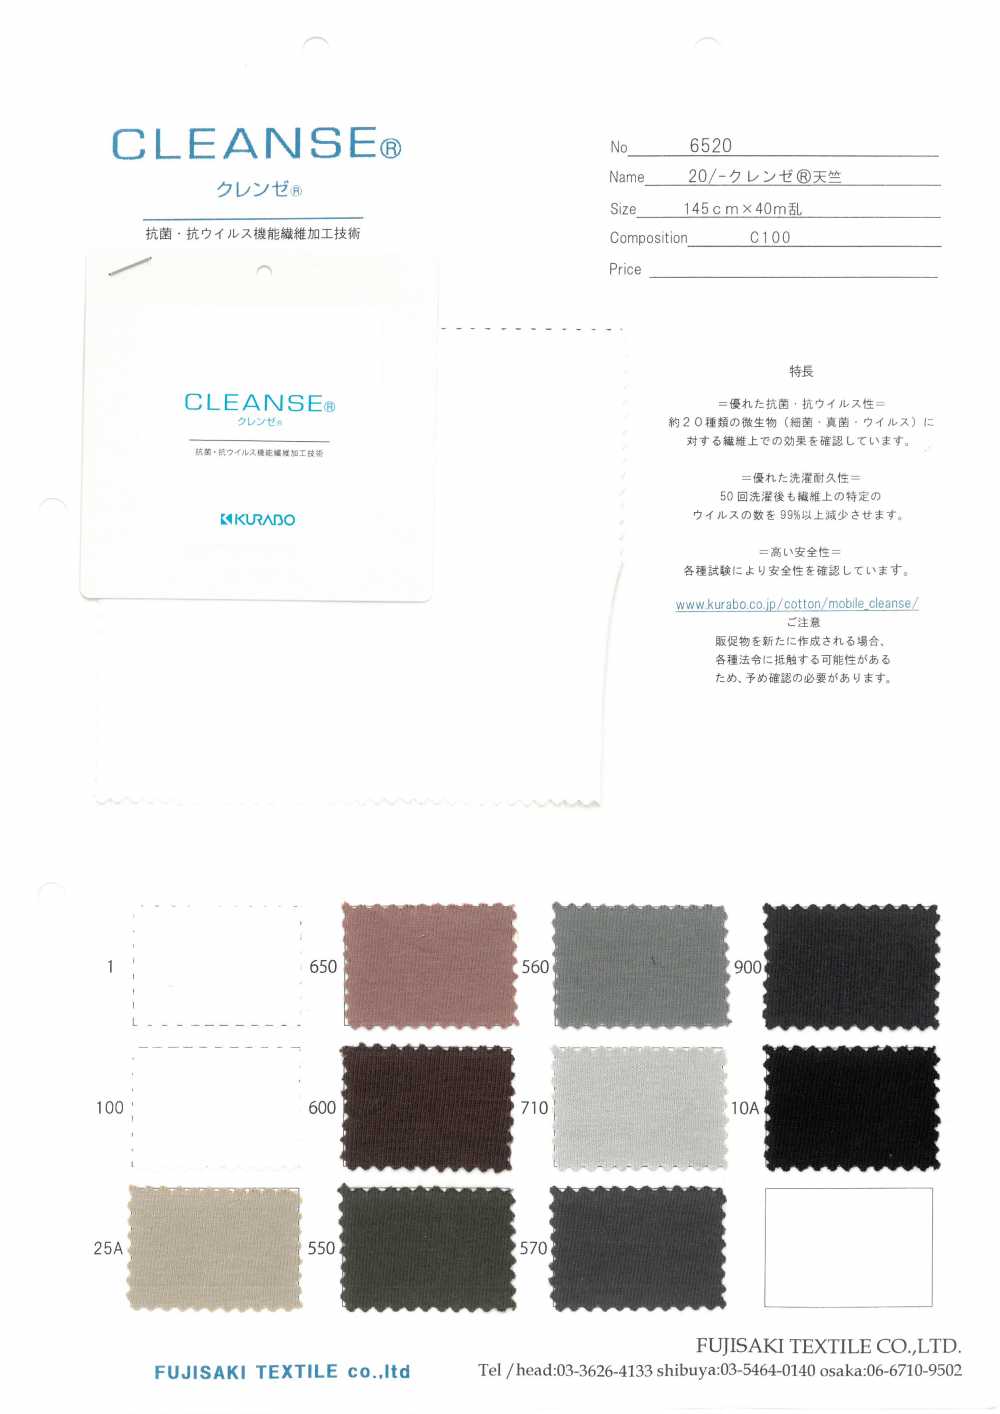 6520 20 / - CLEANSE 싱글 다이마루[원단] Fujisaki Textile